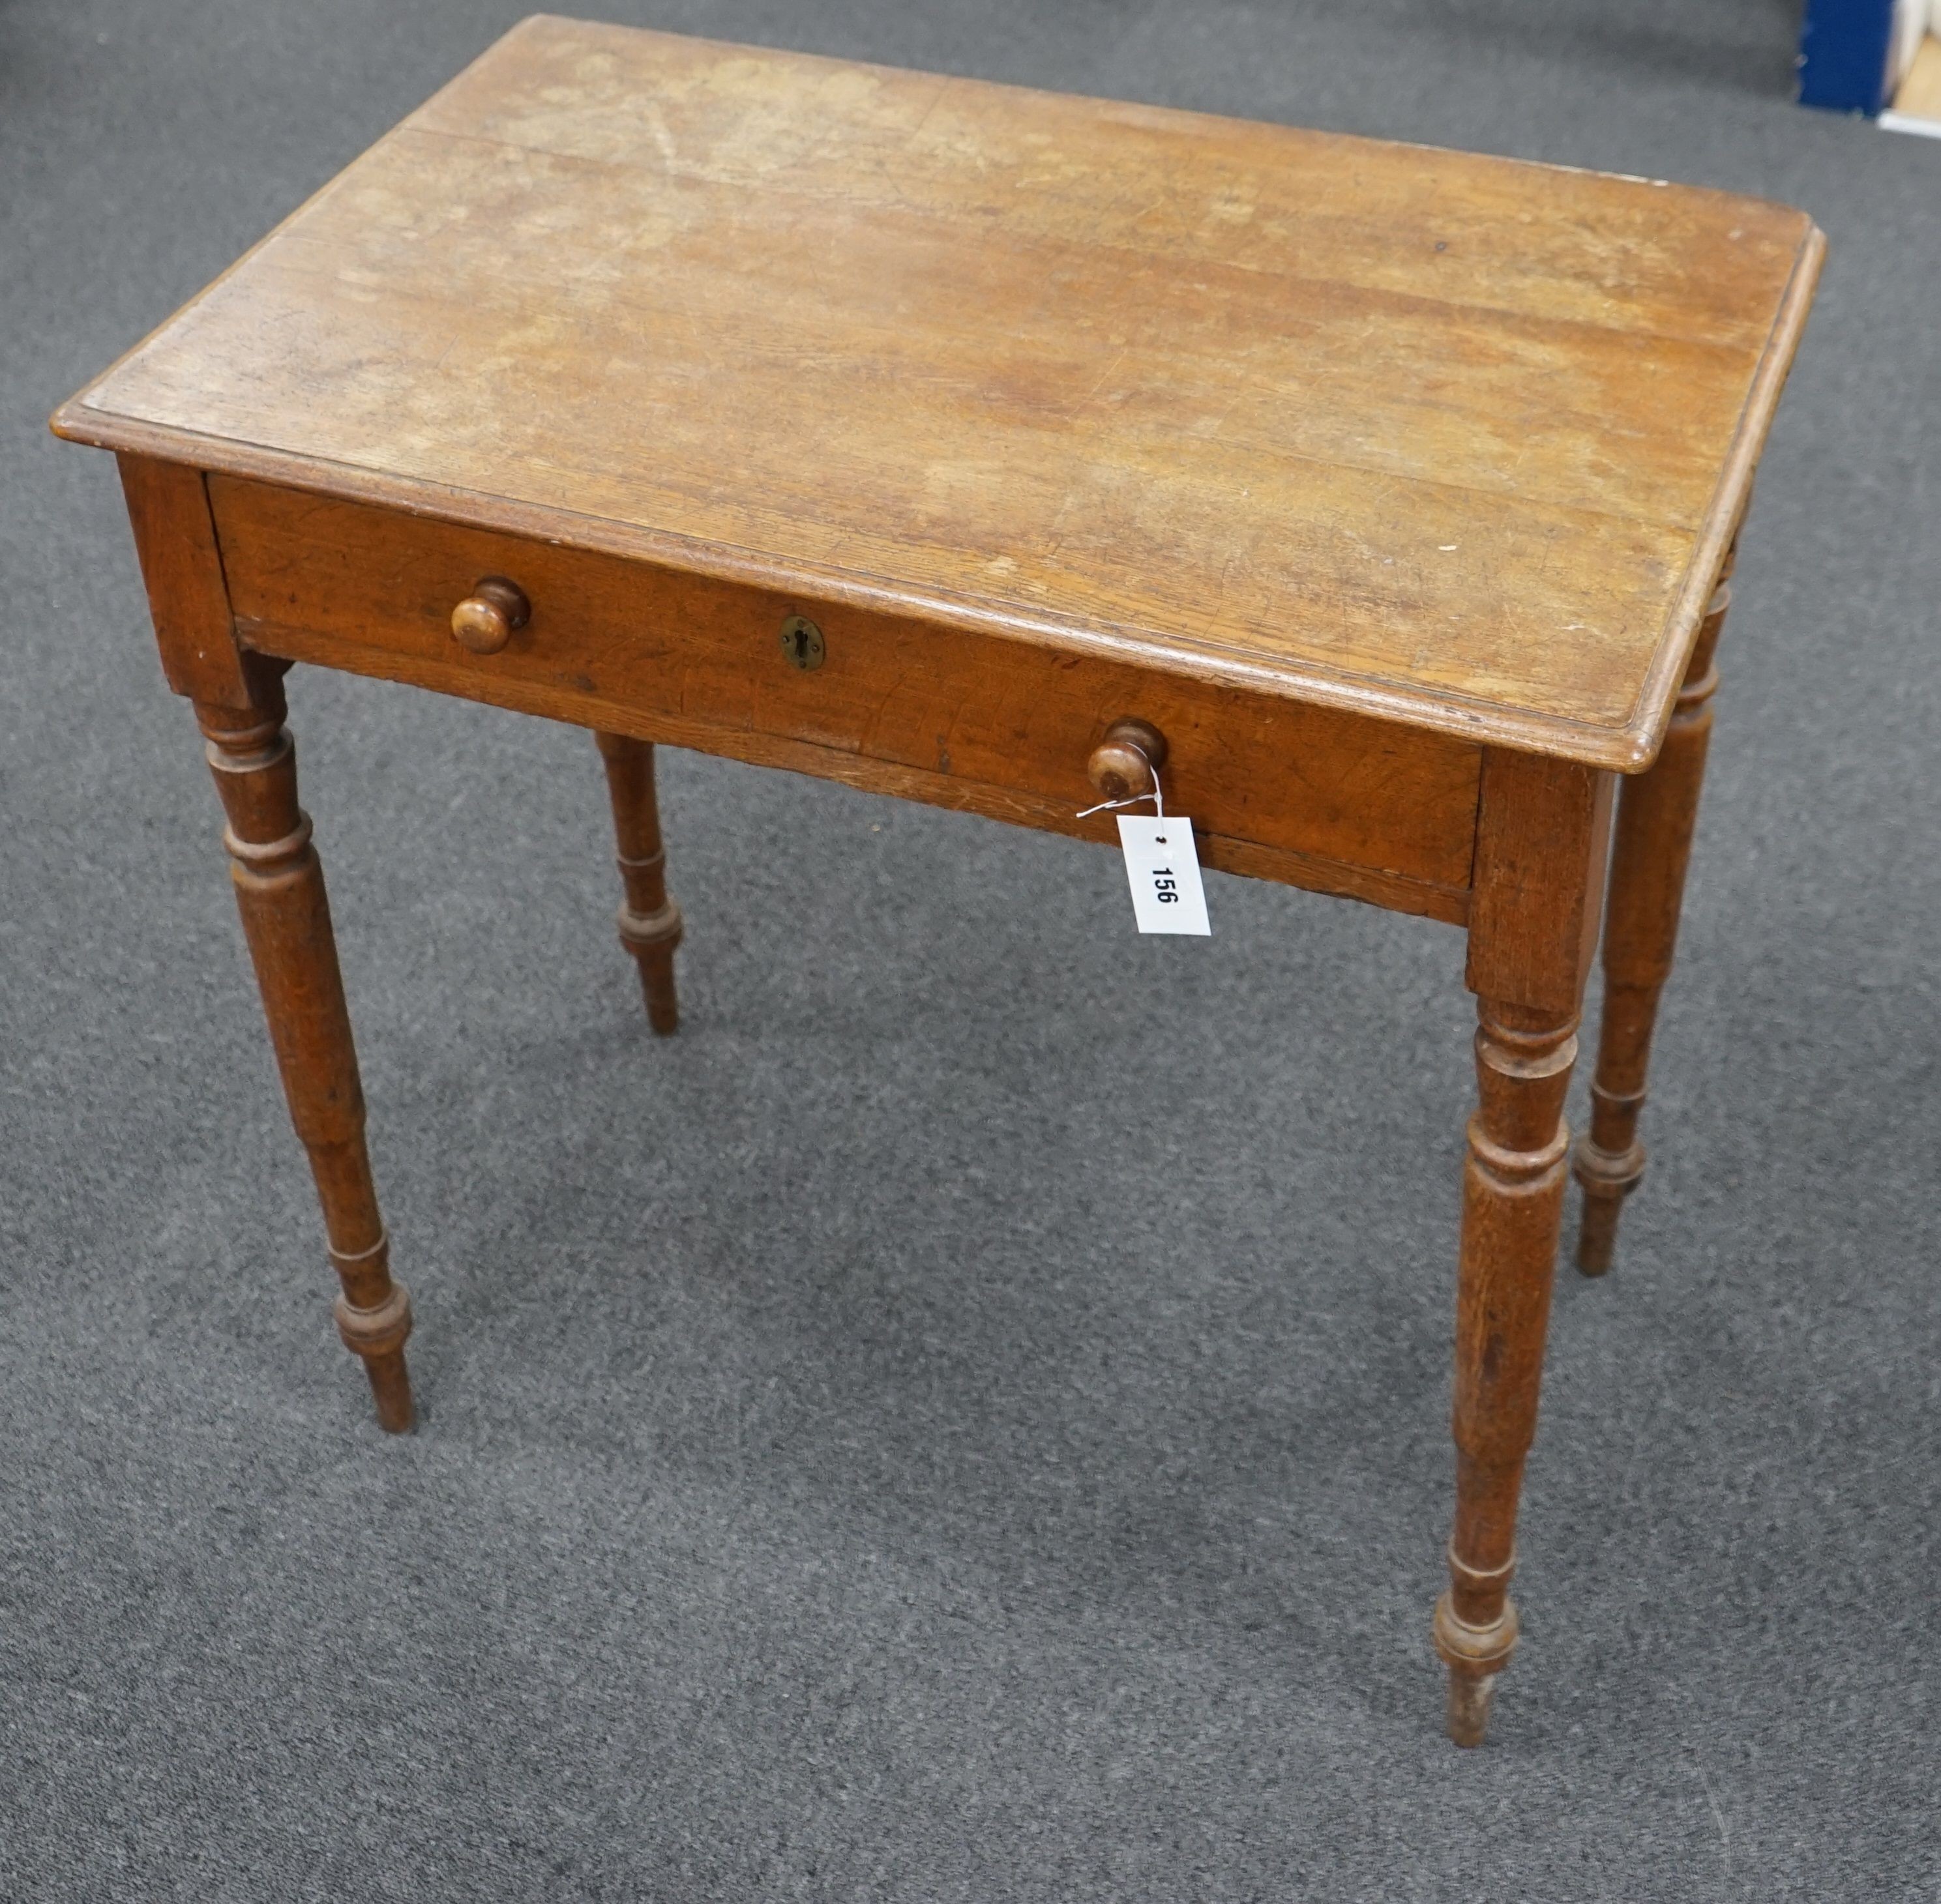 A Victorian oak side table, width 81cm, depth 50cm, height 69cm